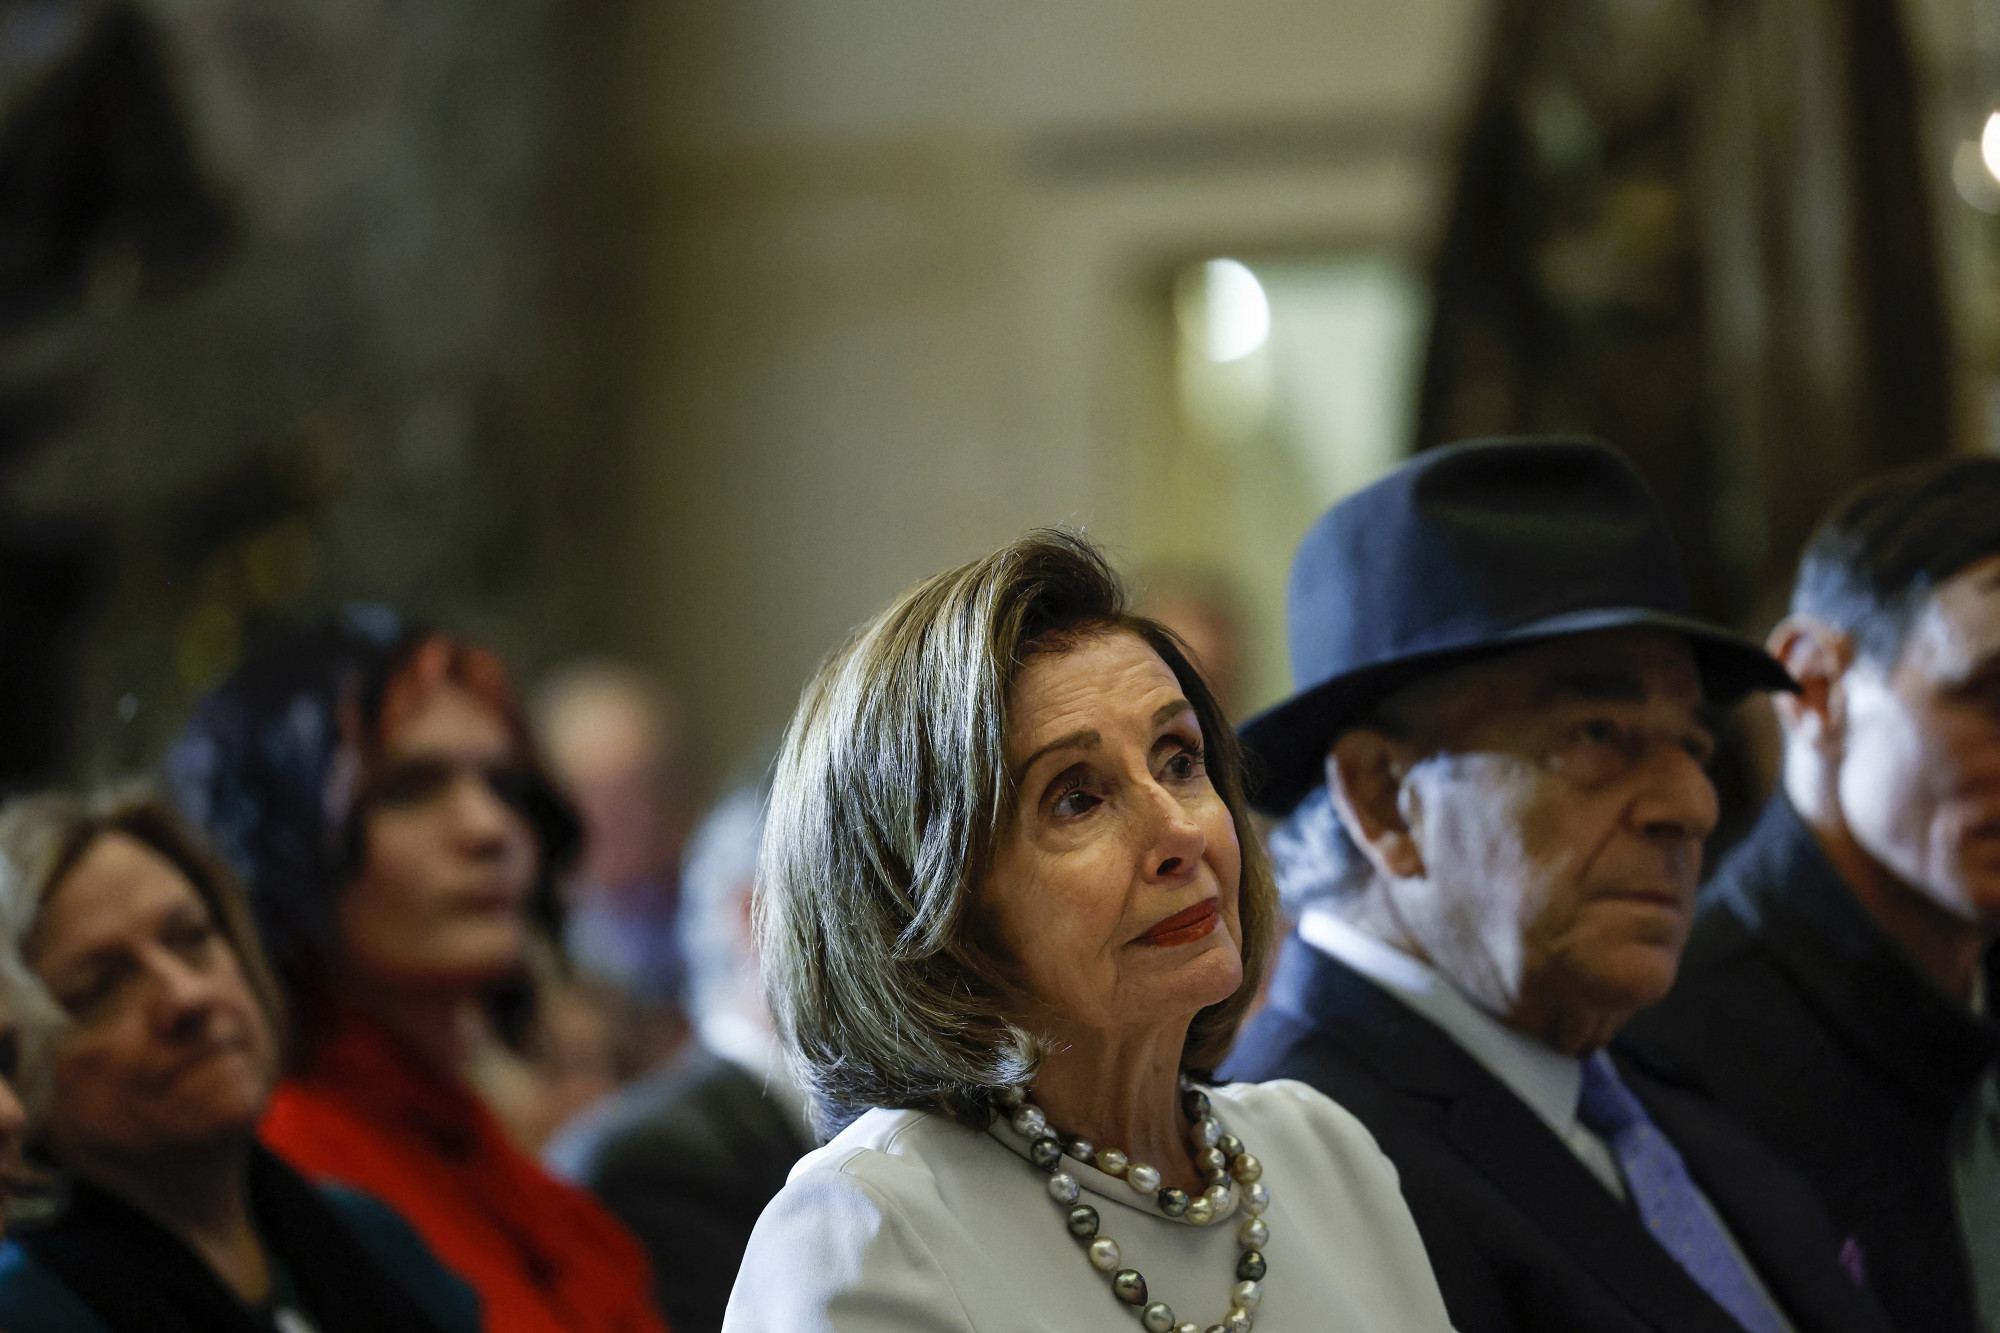 Nancy Pelosi ördögűzőt hívott a házába, hogy elkergesse a gonosz szellemeket